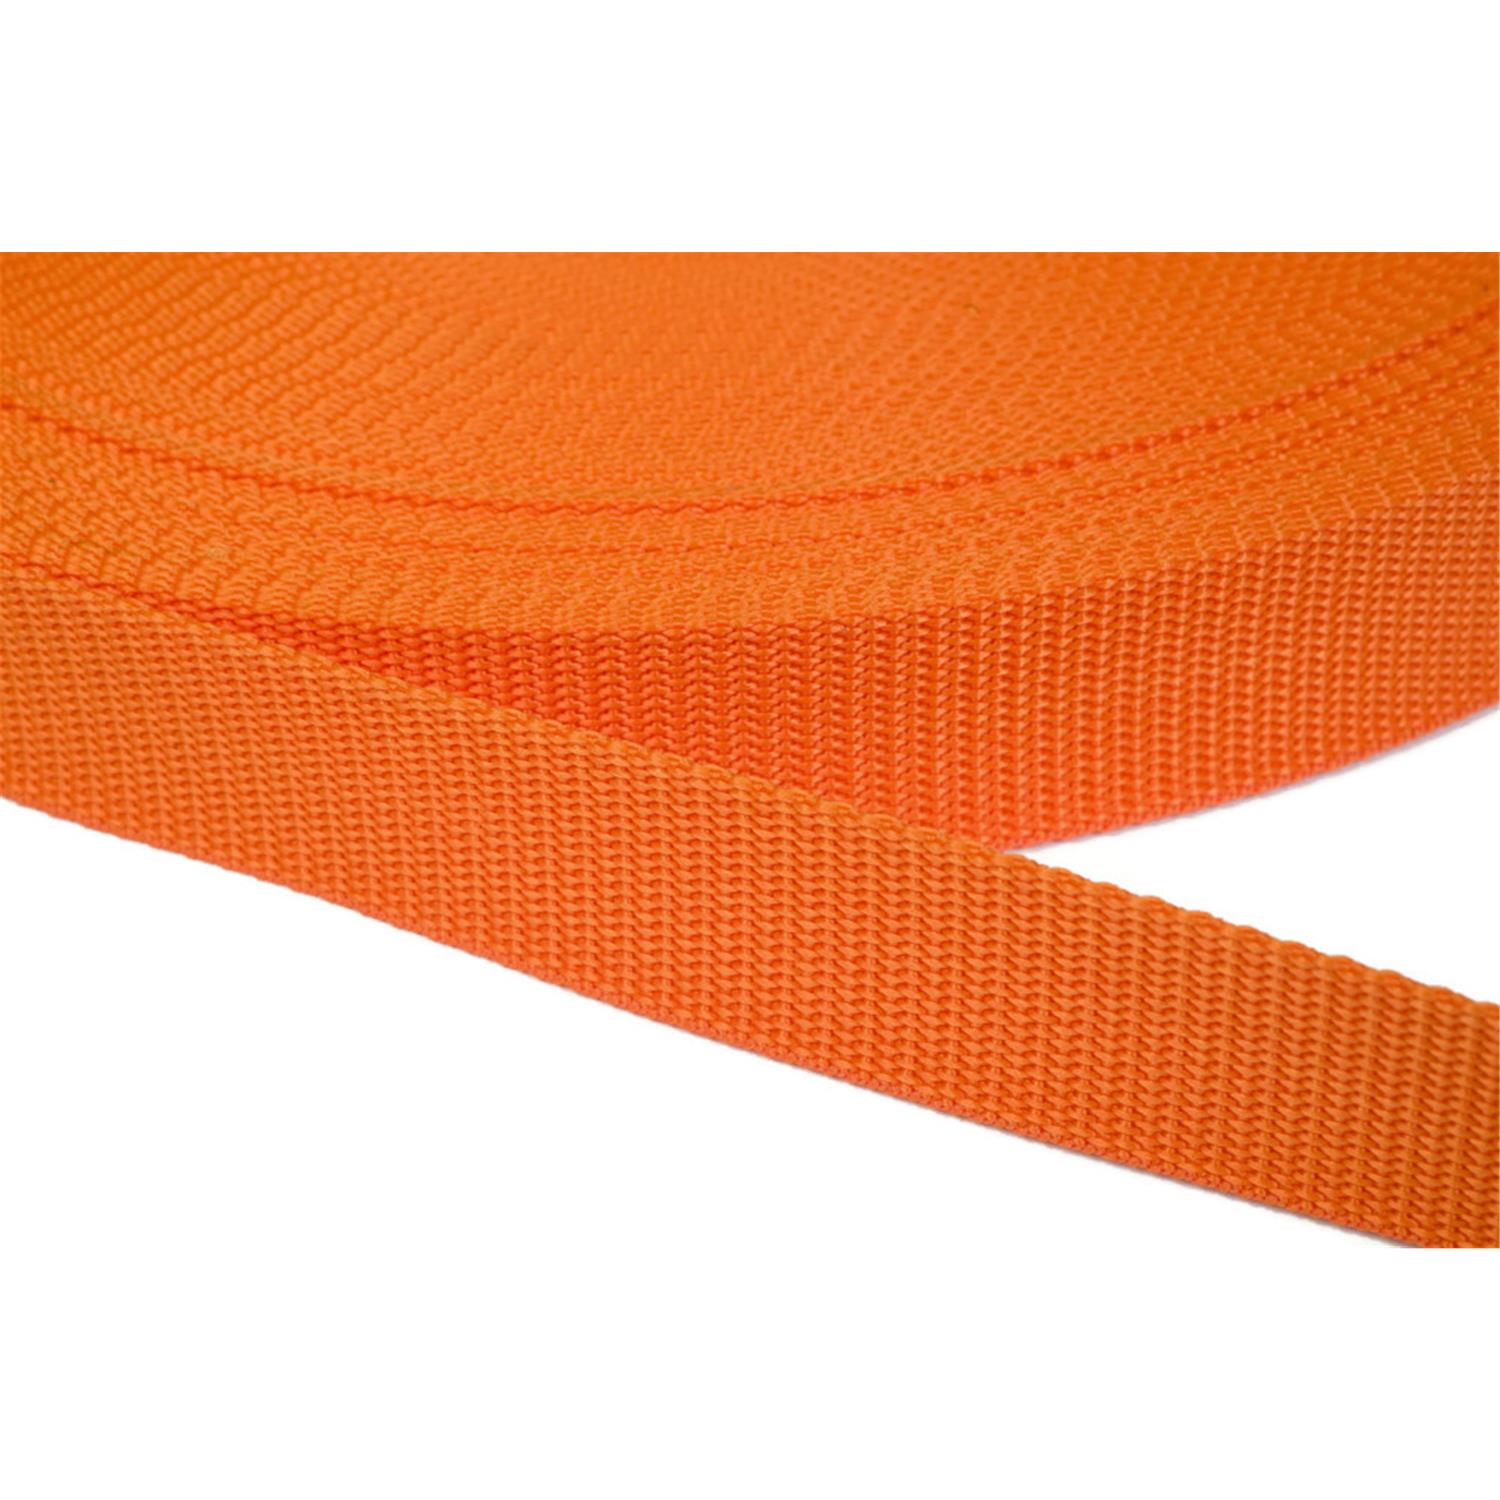 Gurtband 20mm breit aus Polypropylen in 41 Farben 11 - orange 12 Meter